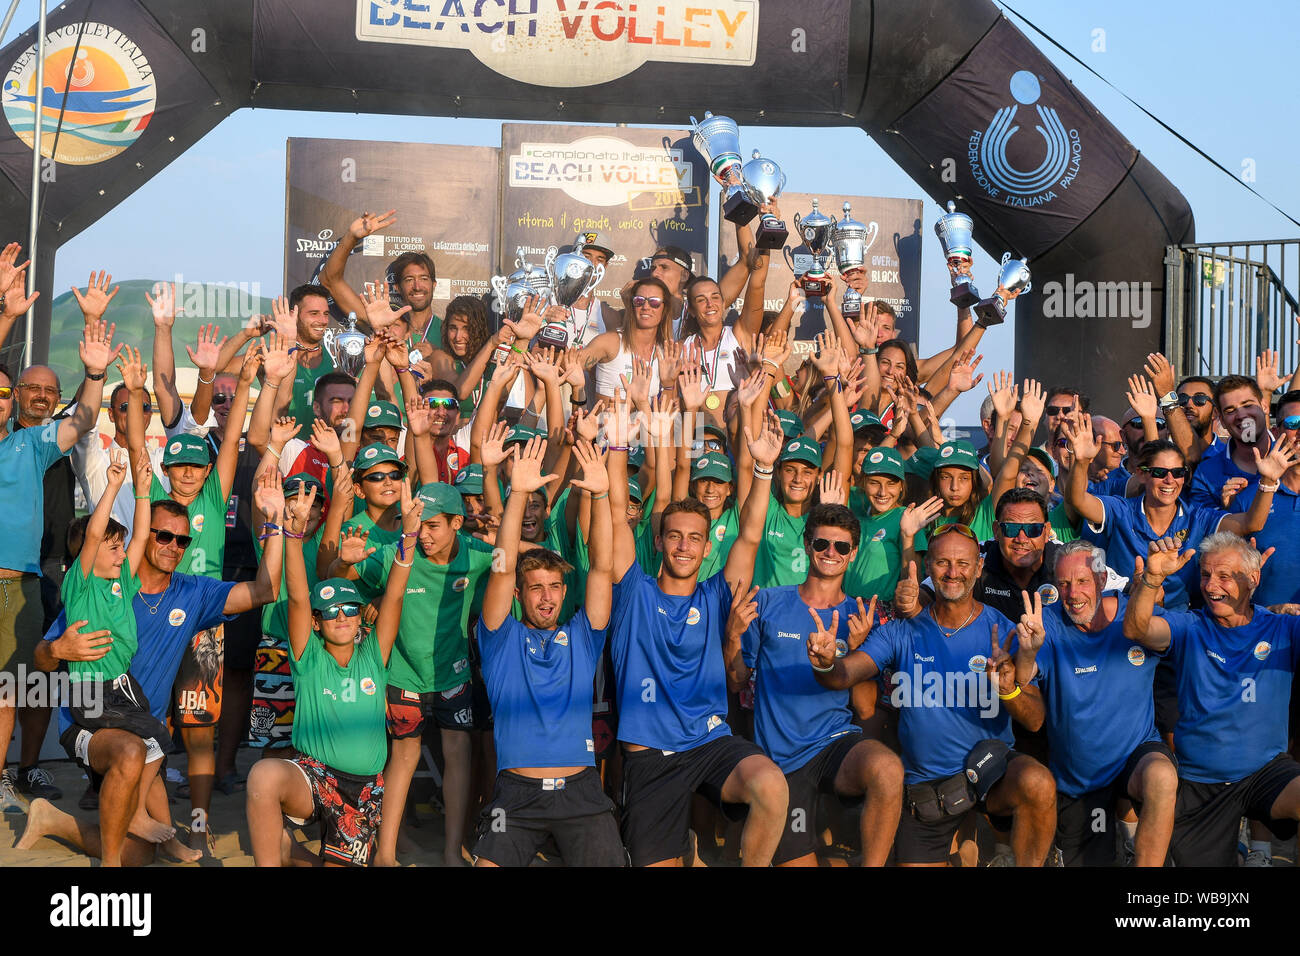 IL PODIO MISTO durante las finales del campeonato italiano 2019 absoluta -hombres, Caorle, Italia, el 25 de agosto de 2019, el Voleibol Voleibol de playa Foto de stock